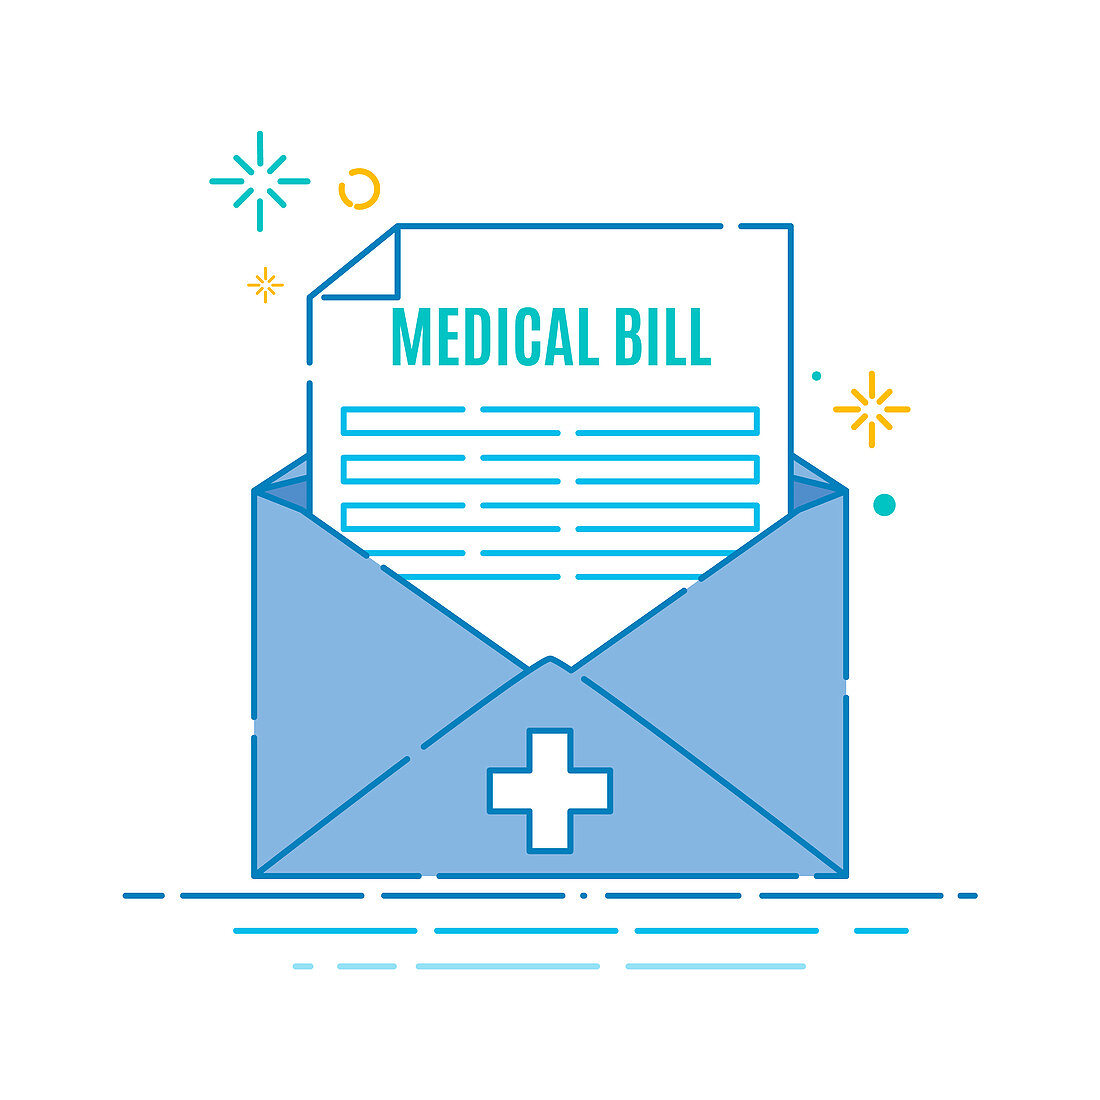 Medical bill invoice, illustration